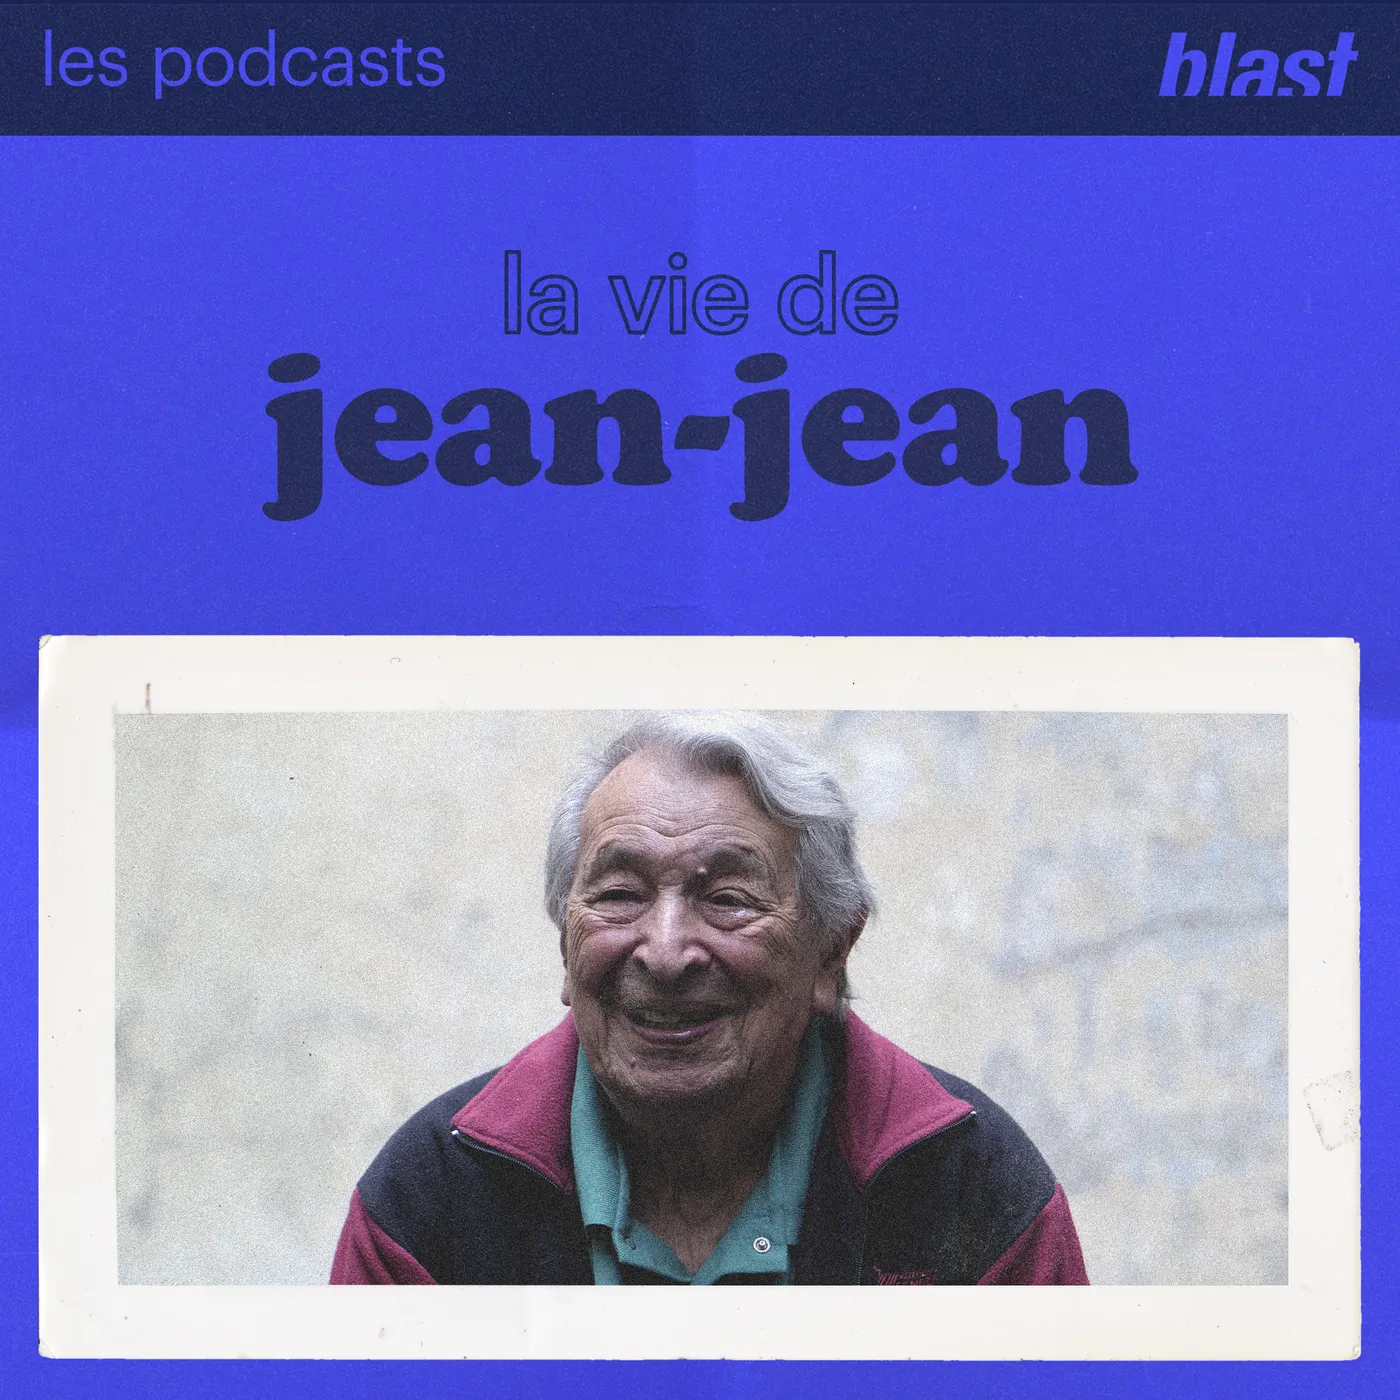 La vie de Jean-Jean